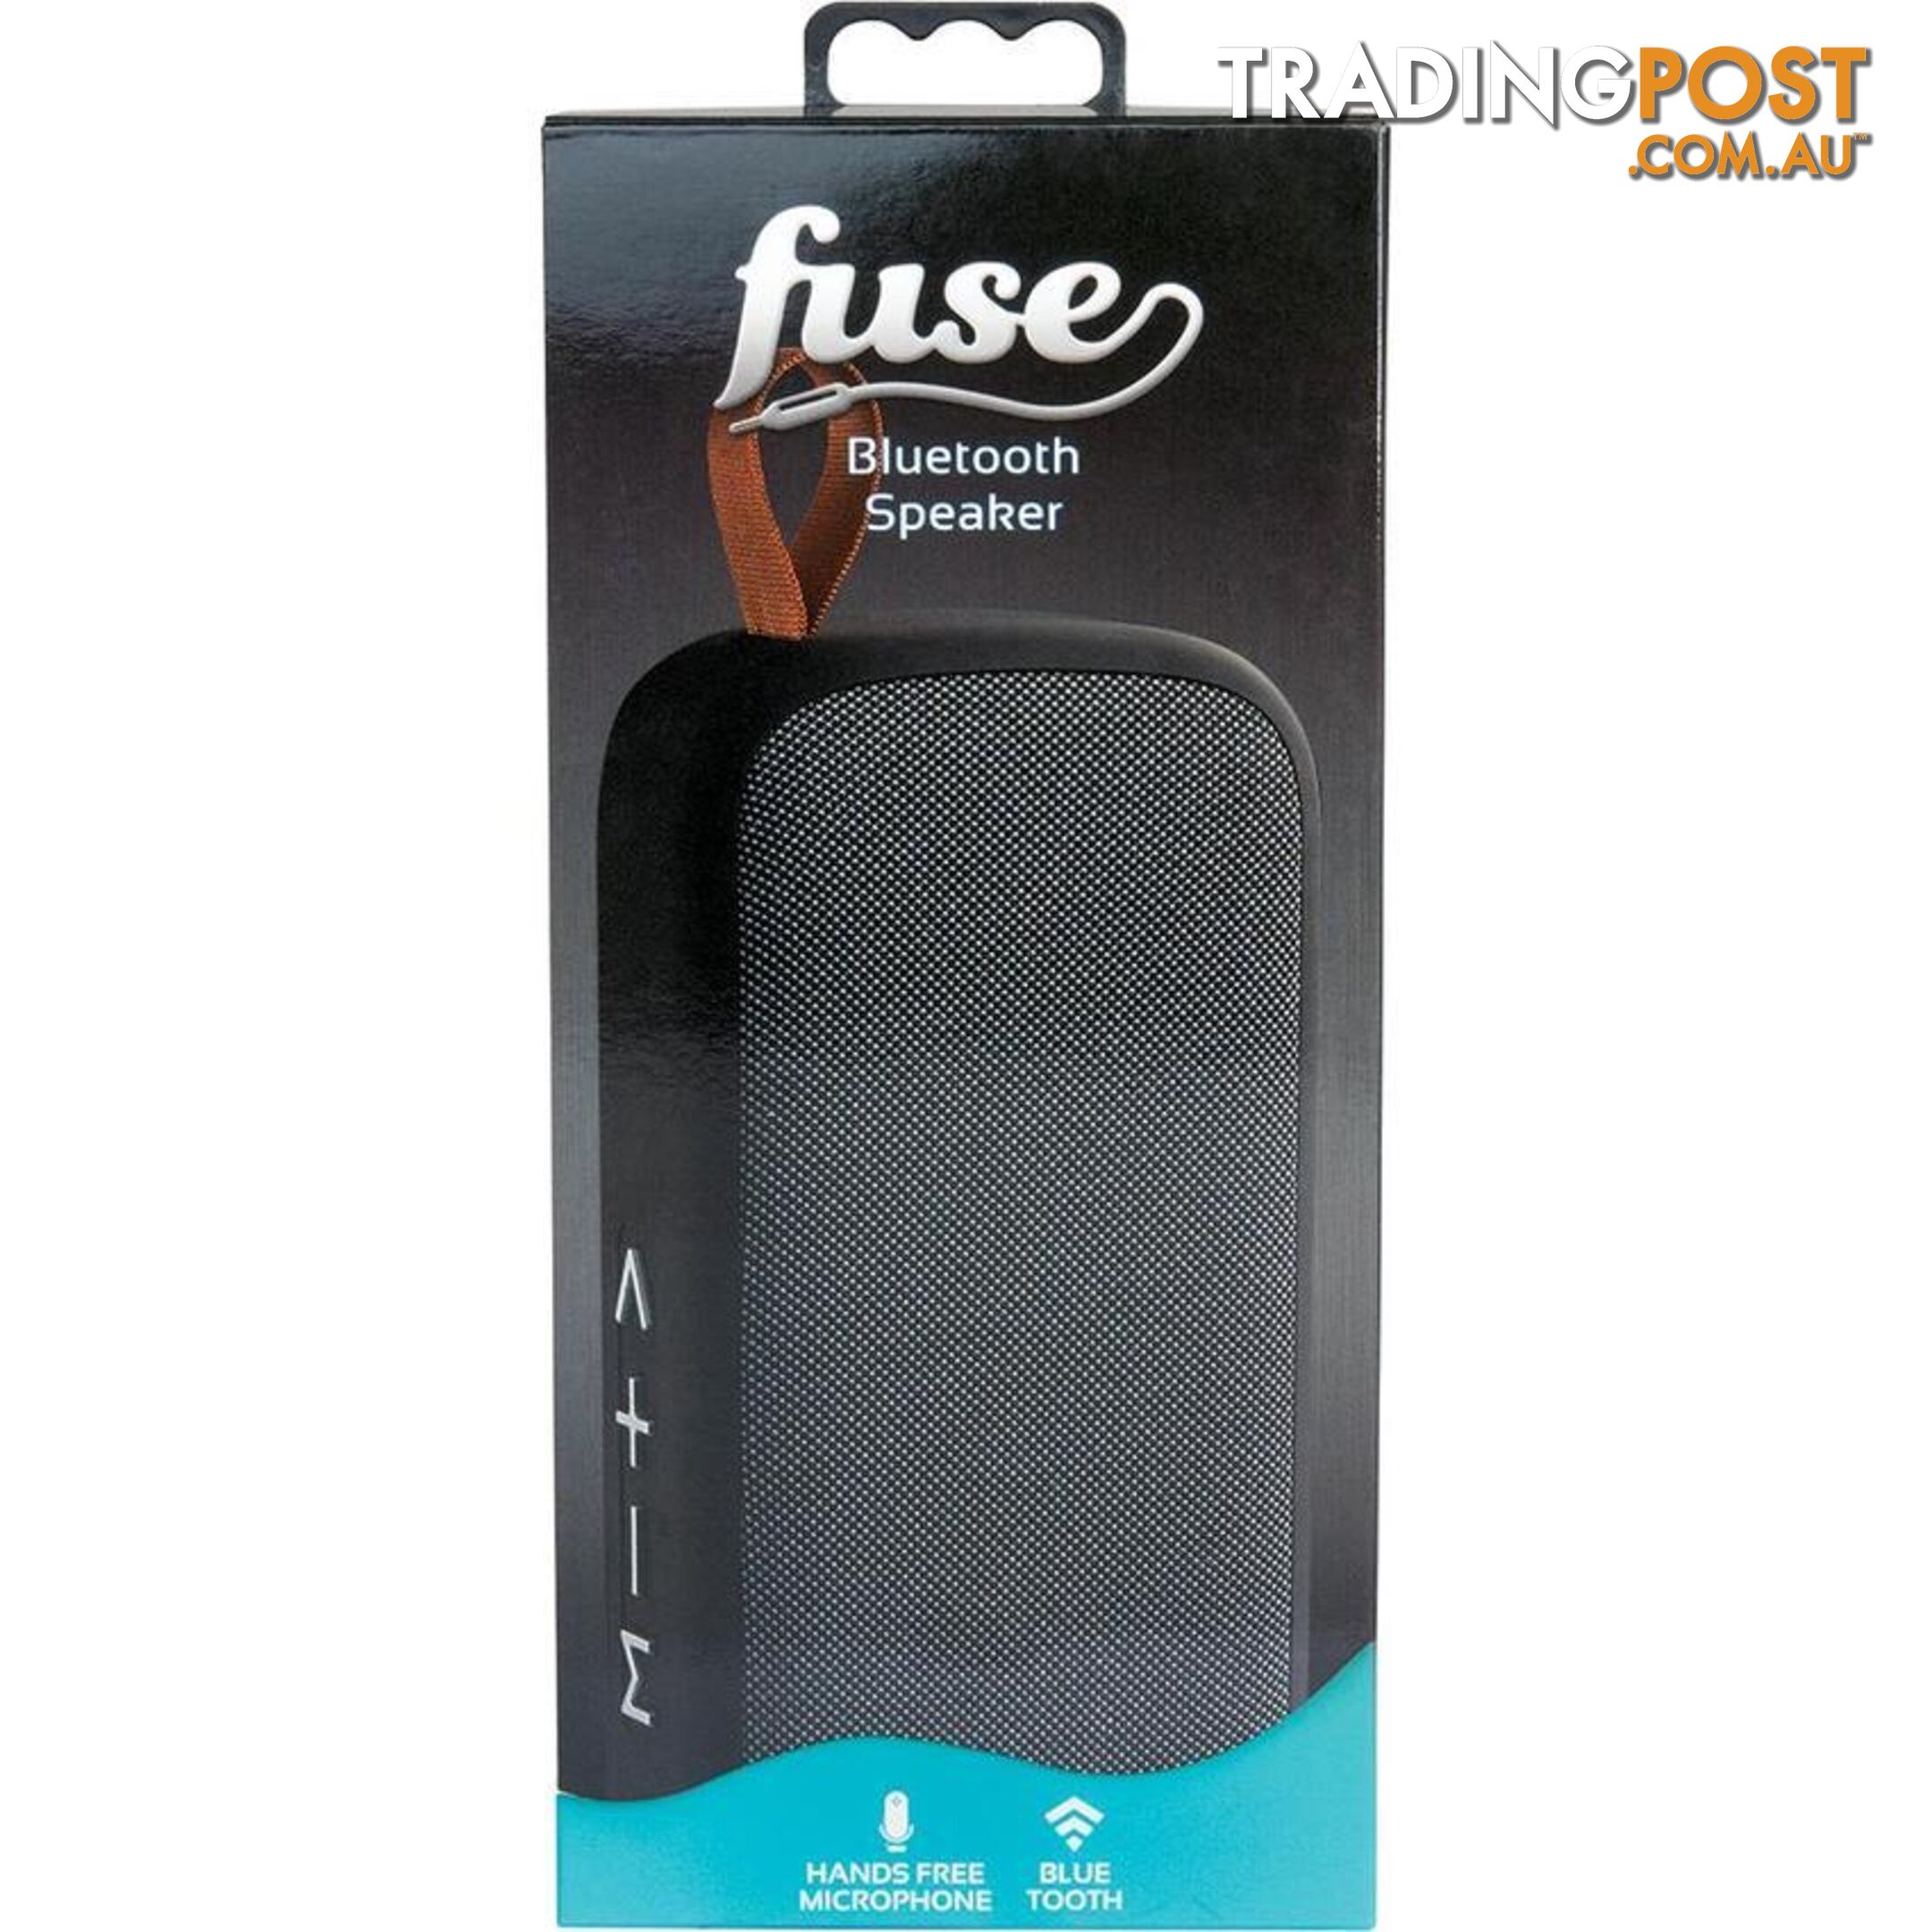 Fuse Blast - Bluetooth Speaker - 100980 - Headphones & Sound